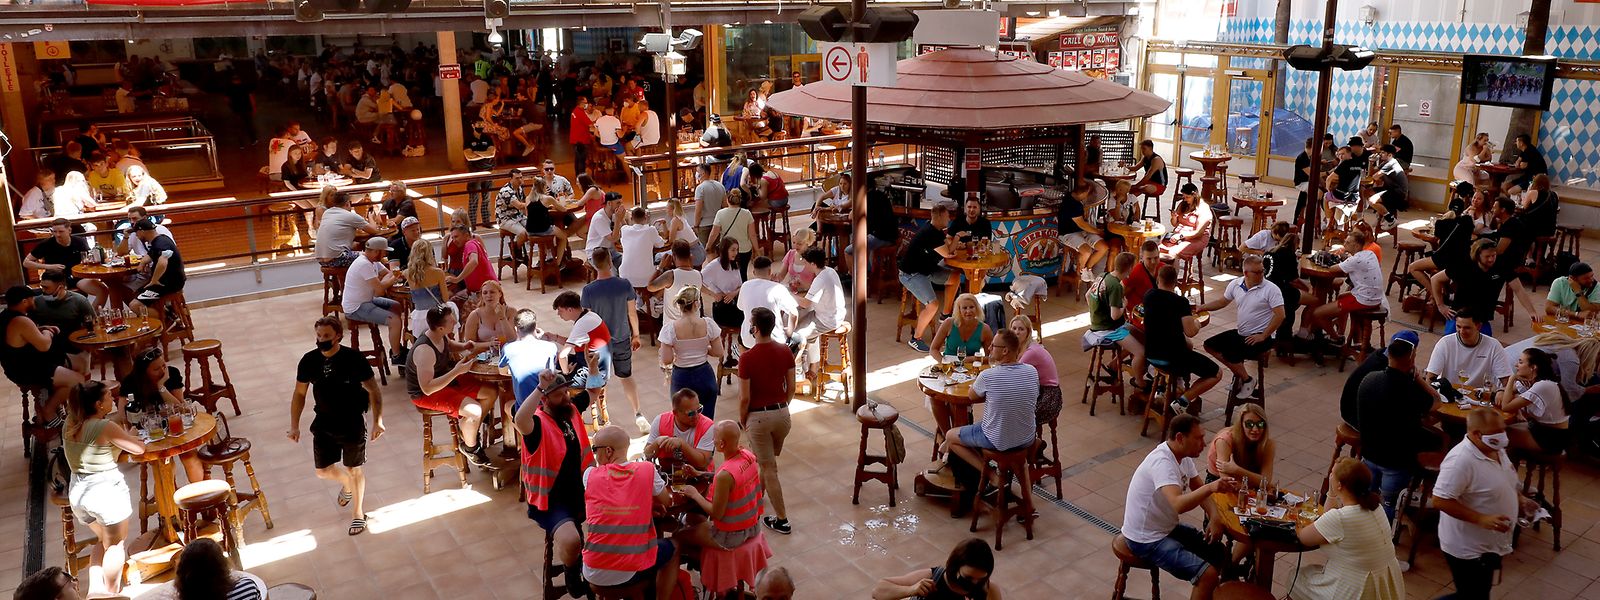 Gäste sitzen an Tischen im Lokal «Bierkönig» auf Mallorca. Das Lokal hat nach Monaten der Schließung wieder geöffnet. Allerdings gelten noch diverse Corona-Auflagen für die Gäste.